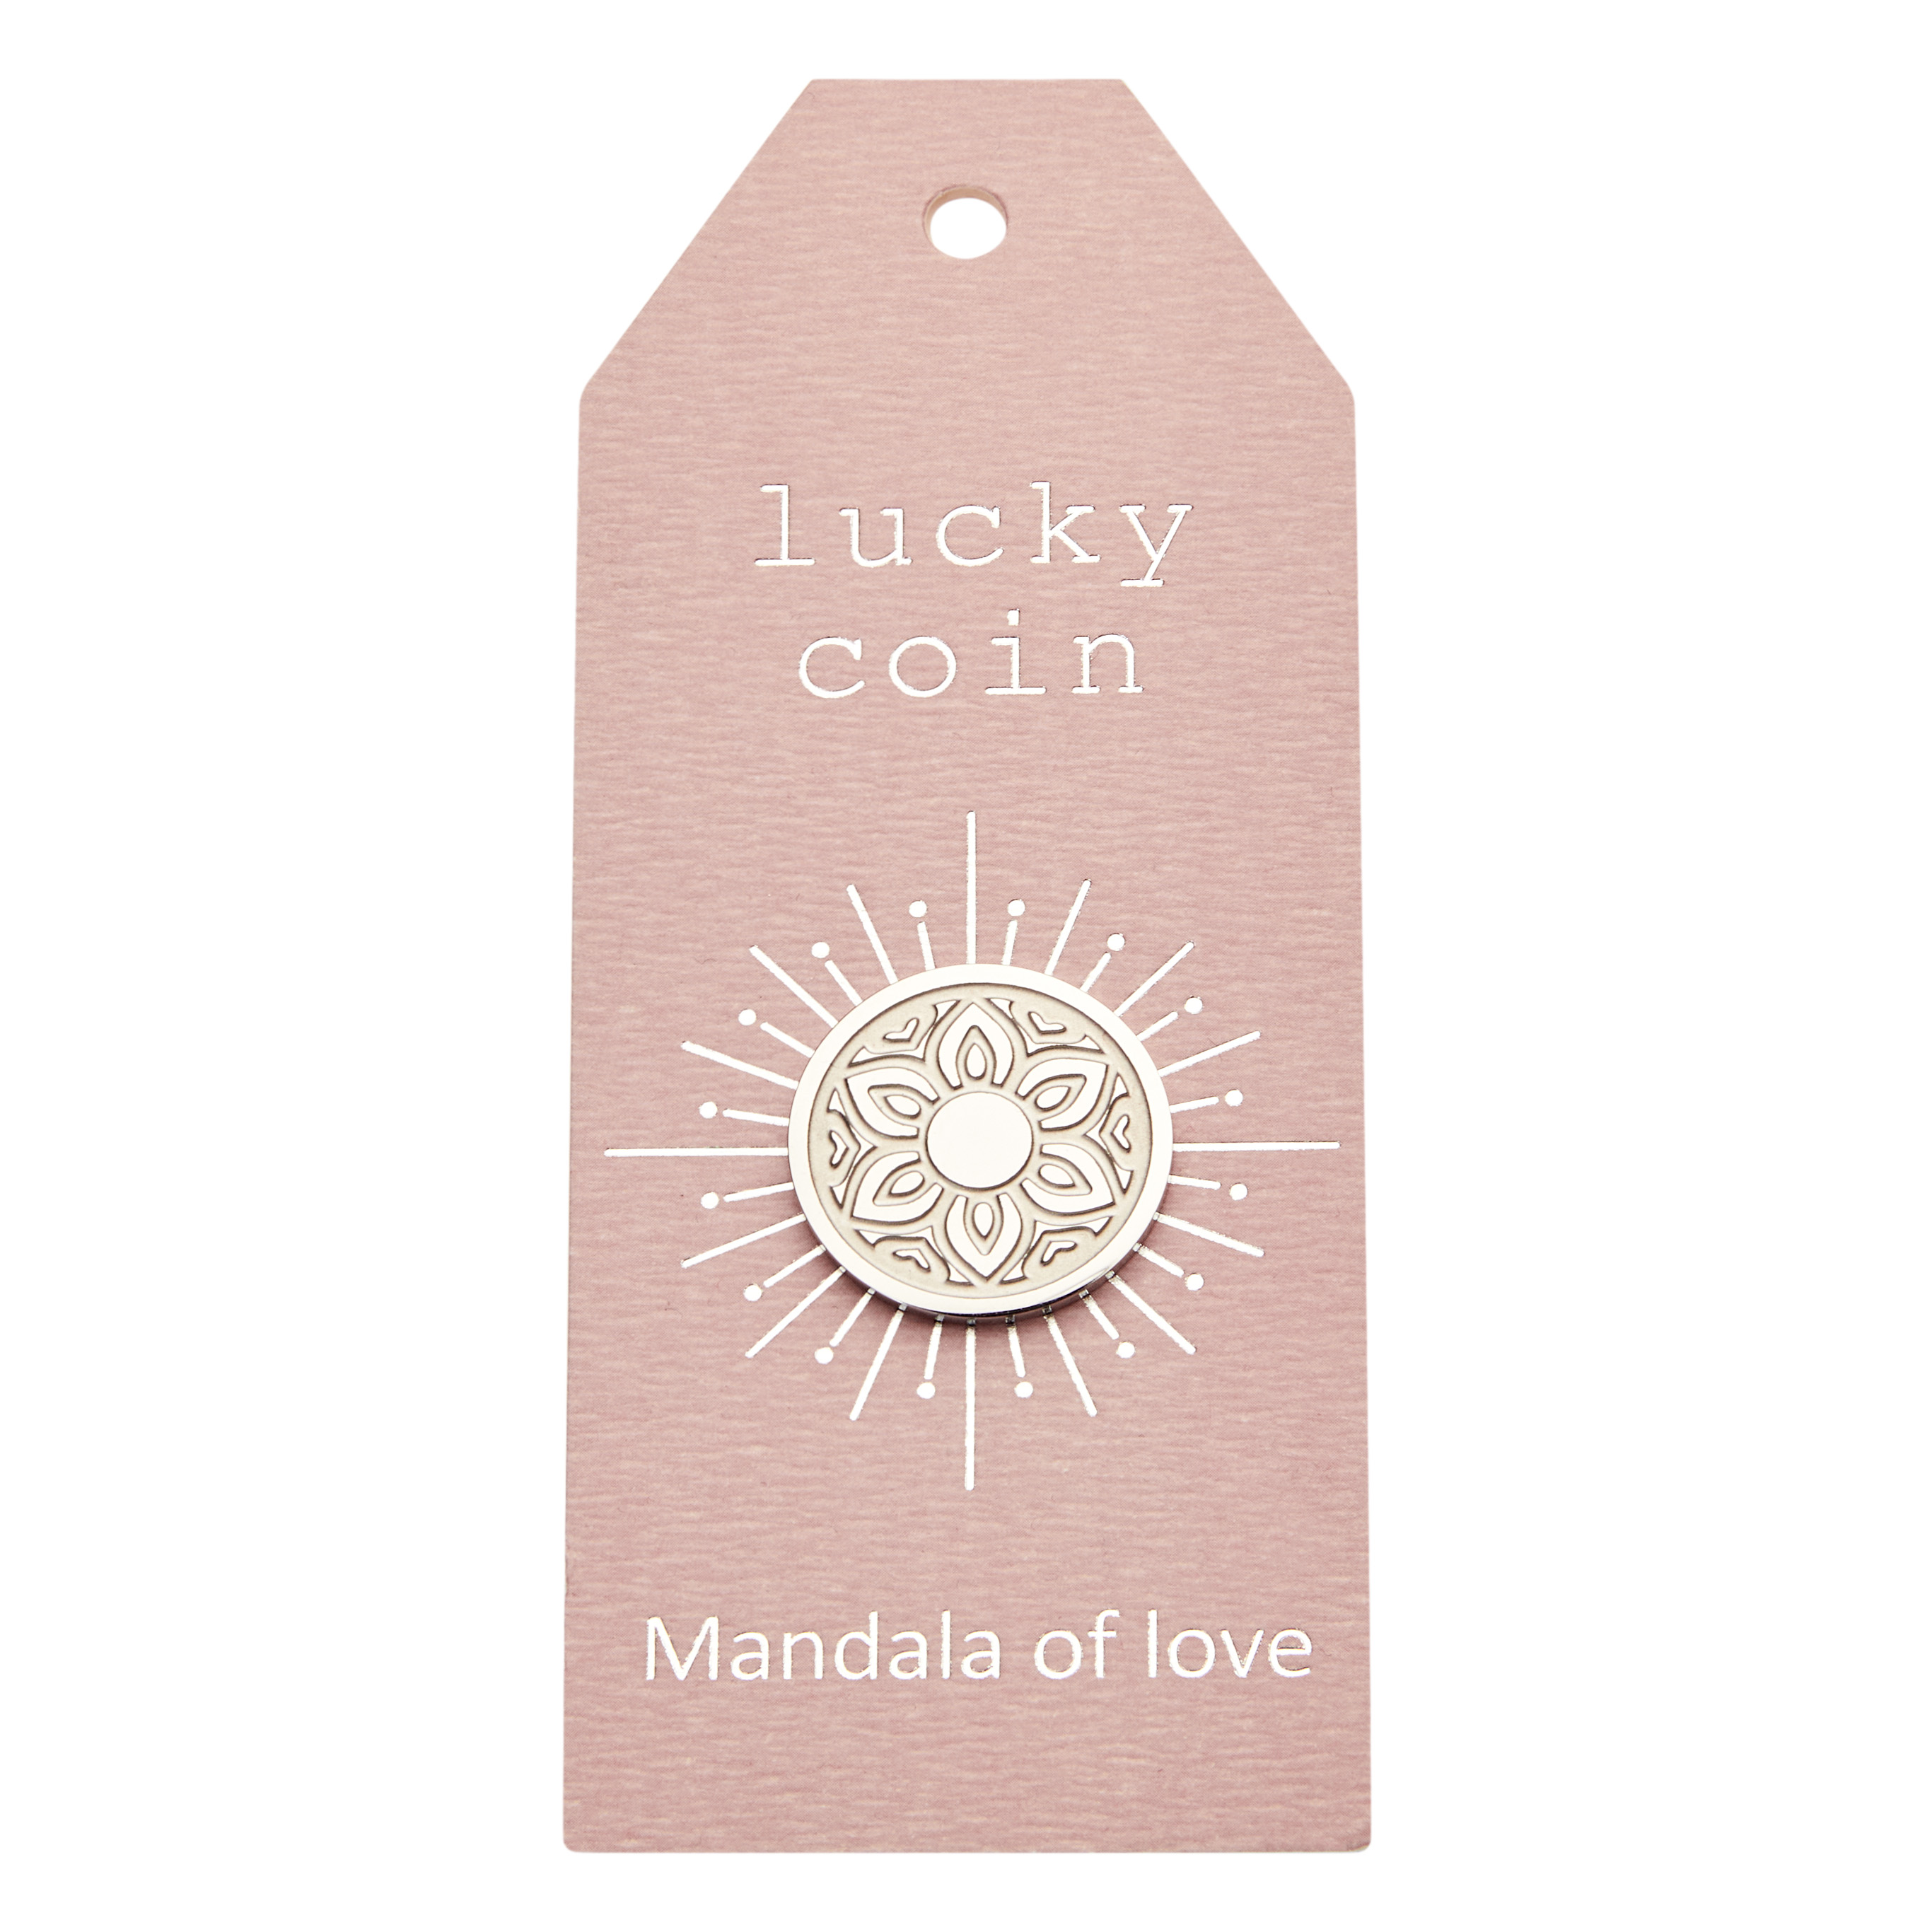 Münzen - "lucky coin" - Edelstahl - Mandala der Liebe